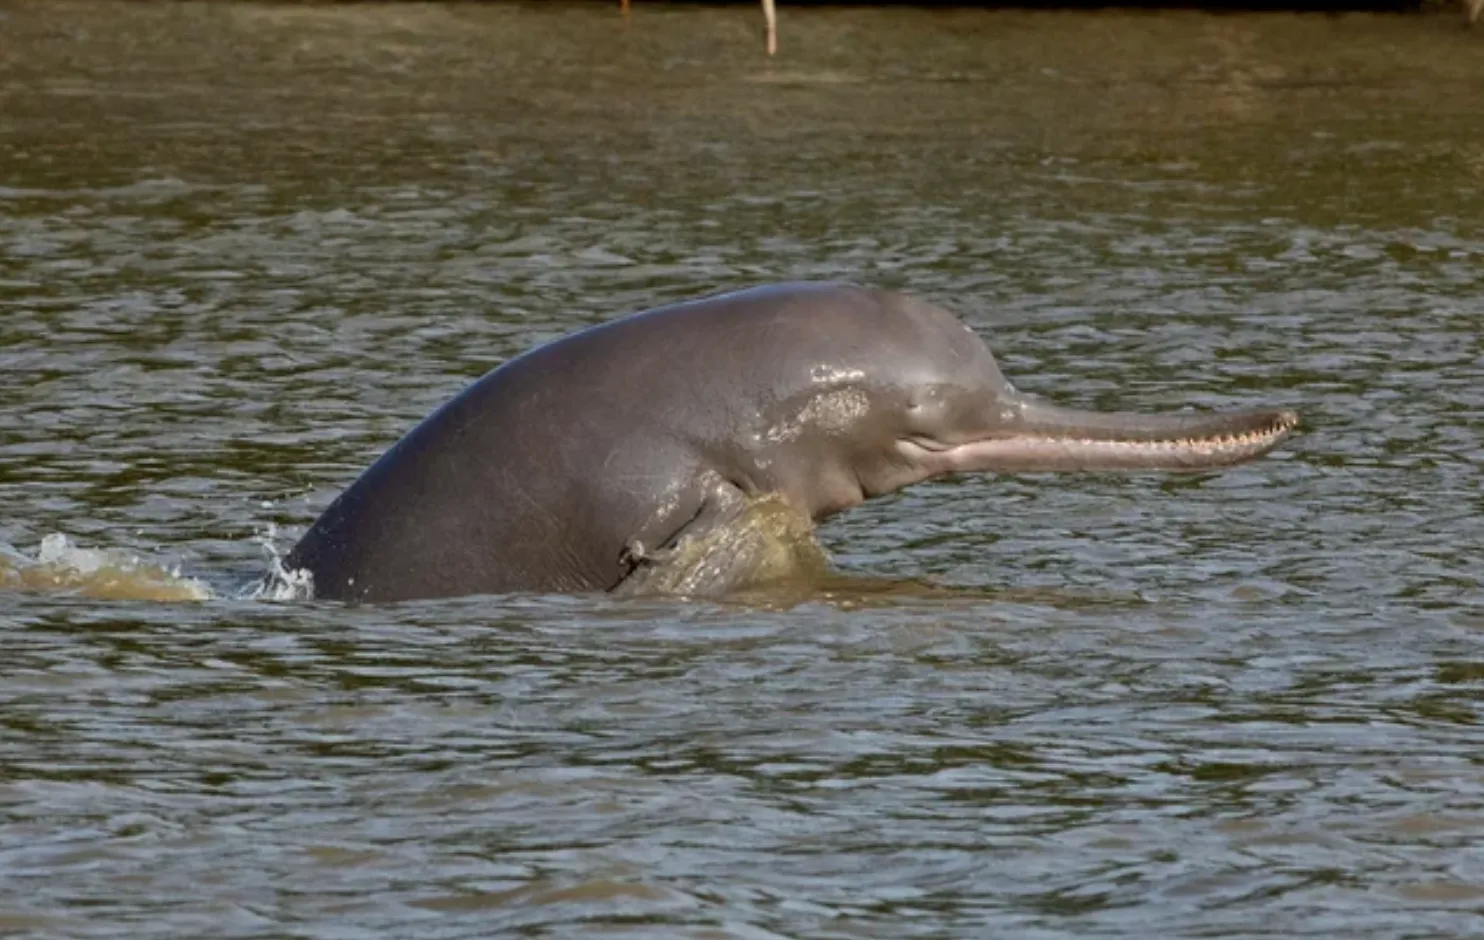 Дельфін річки Ганг зустрічається у великих річкових системах Індії, Бангладеш і Непалу